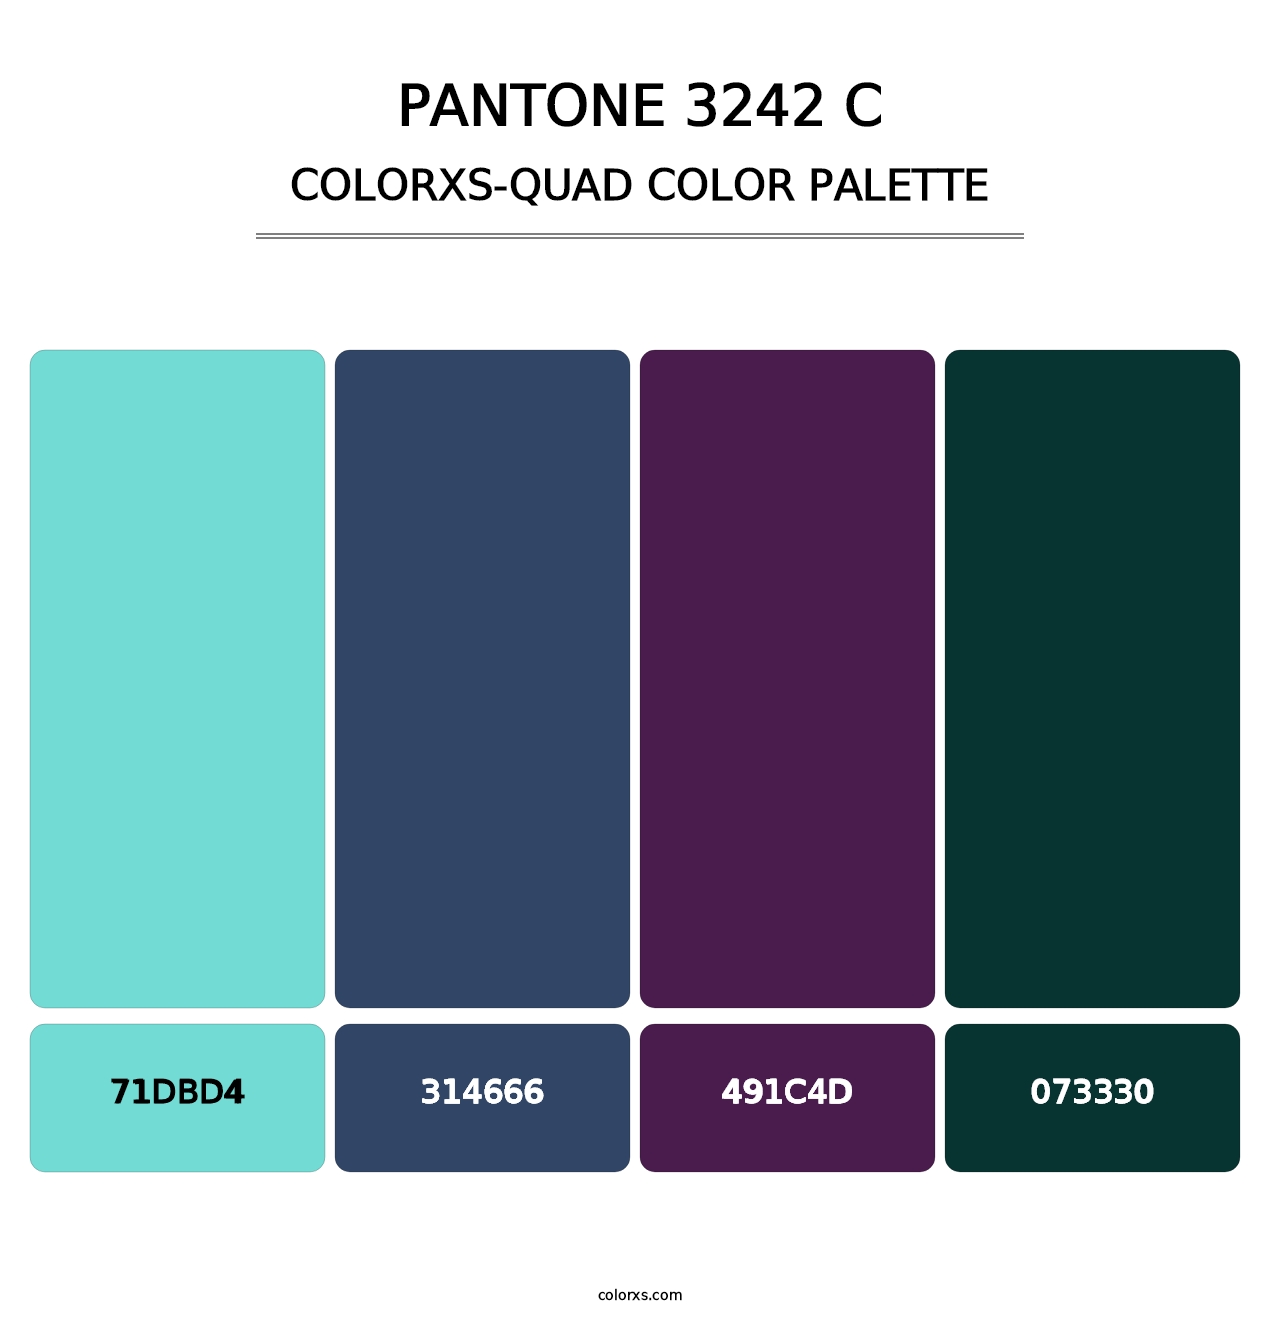 PANTONE 3242 C - Colorxs Quad Palette